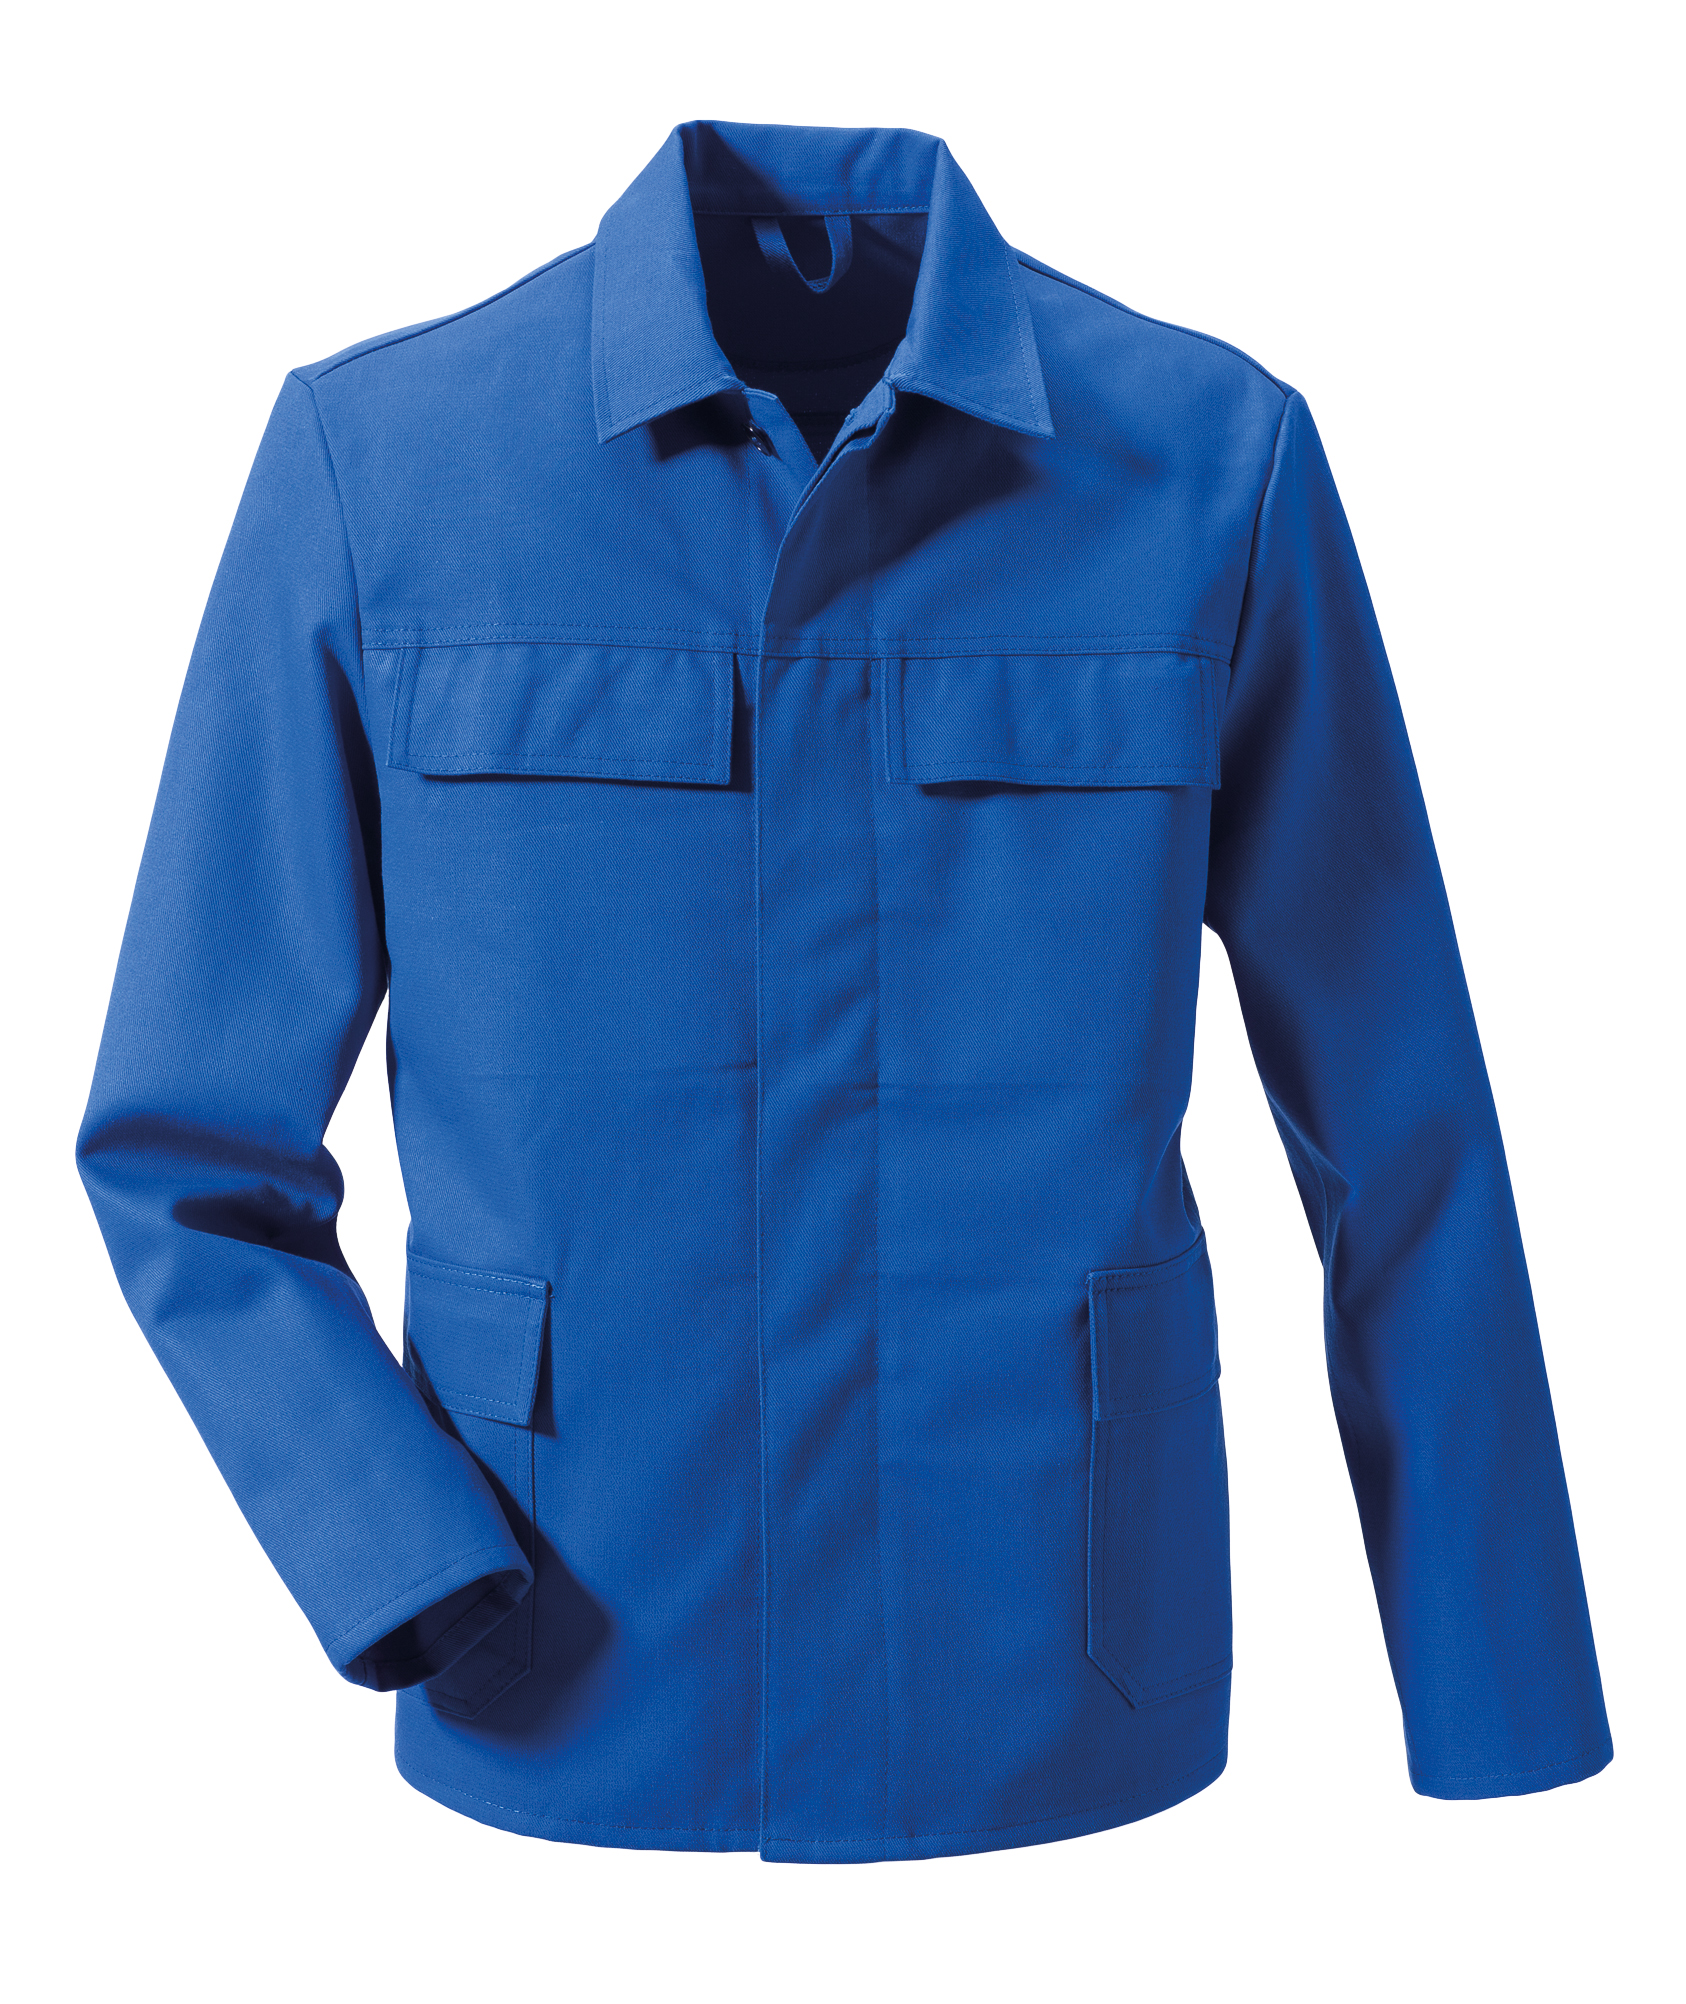 ROFA Schweißerschutzacke Arbeitsjacke Schutzjacke Proban Lichtbogengeprüft kornblau ca 330 g